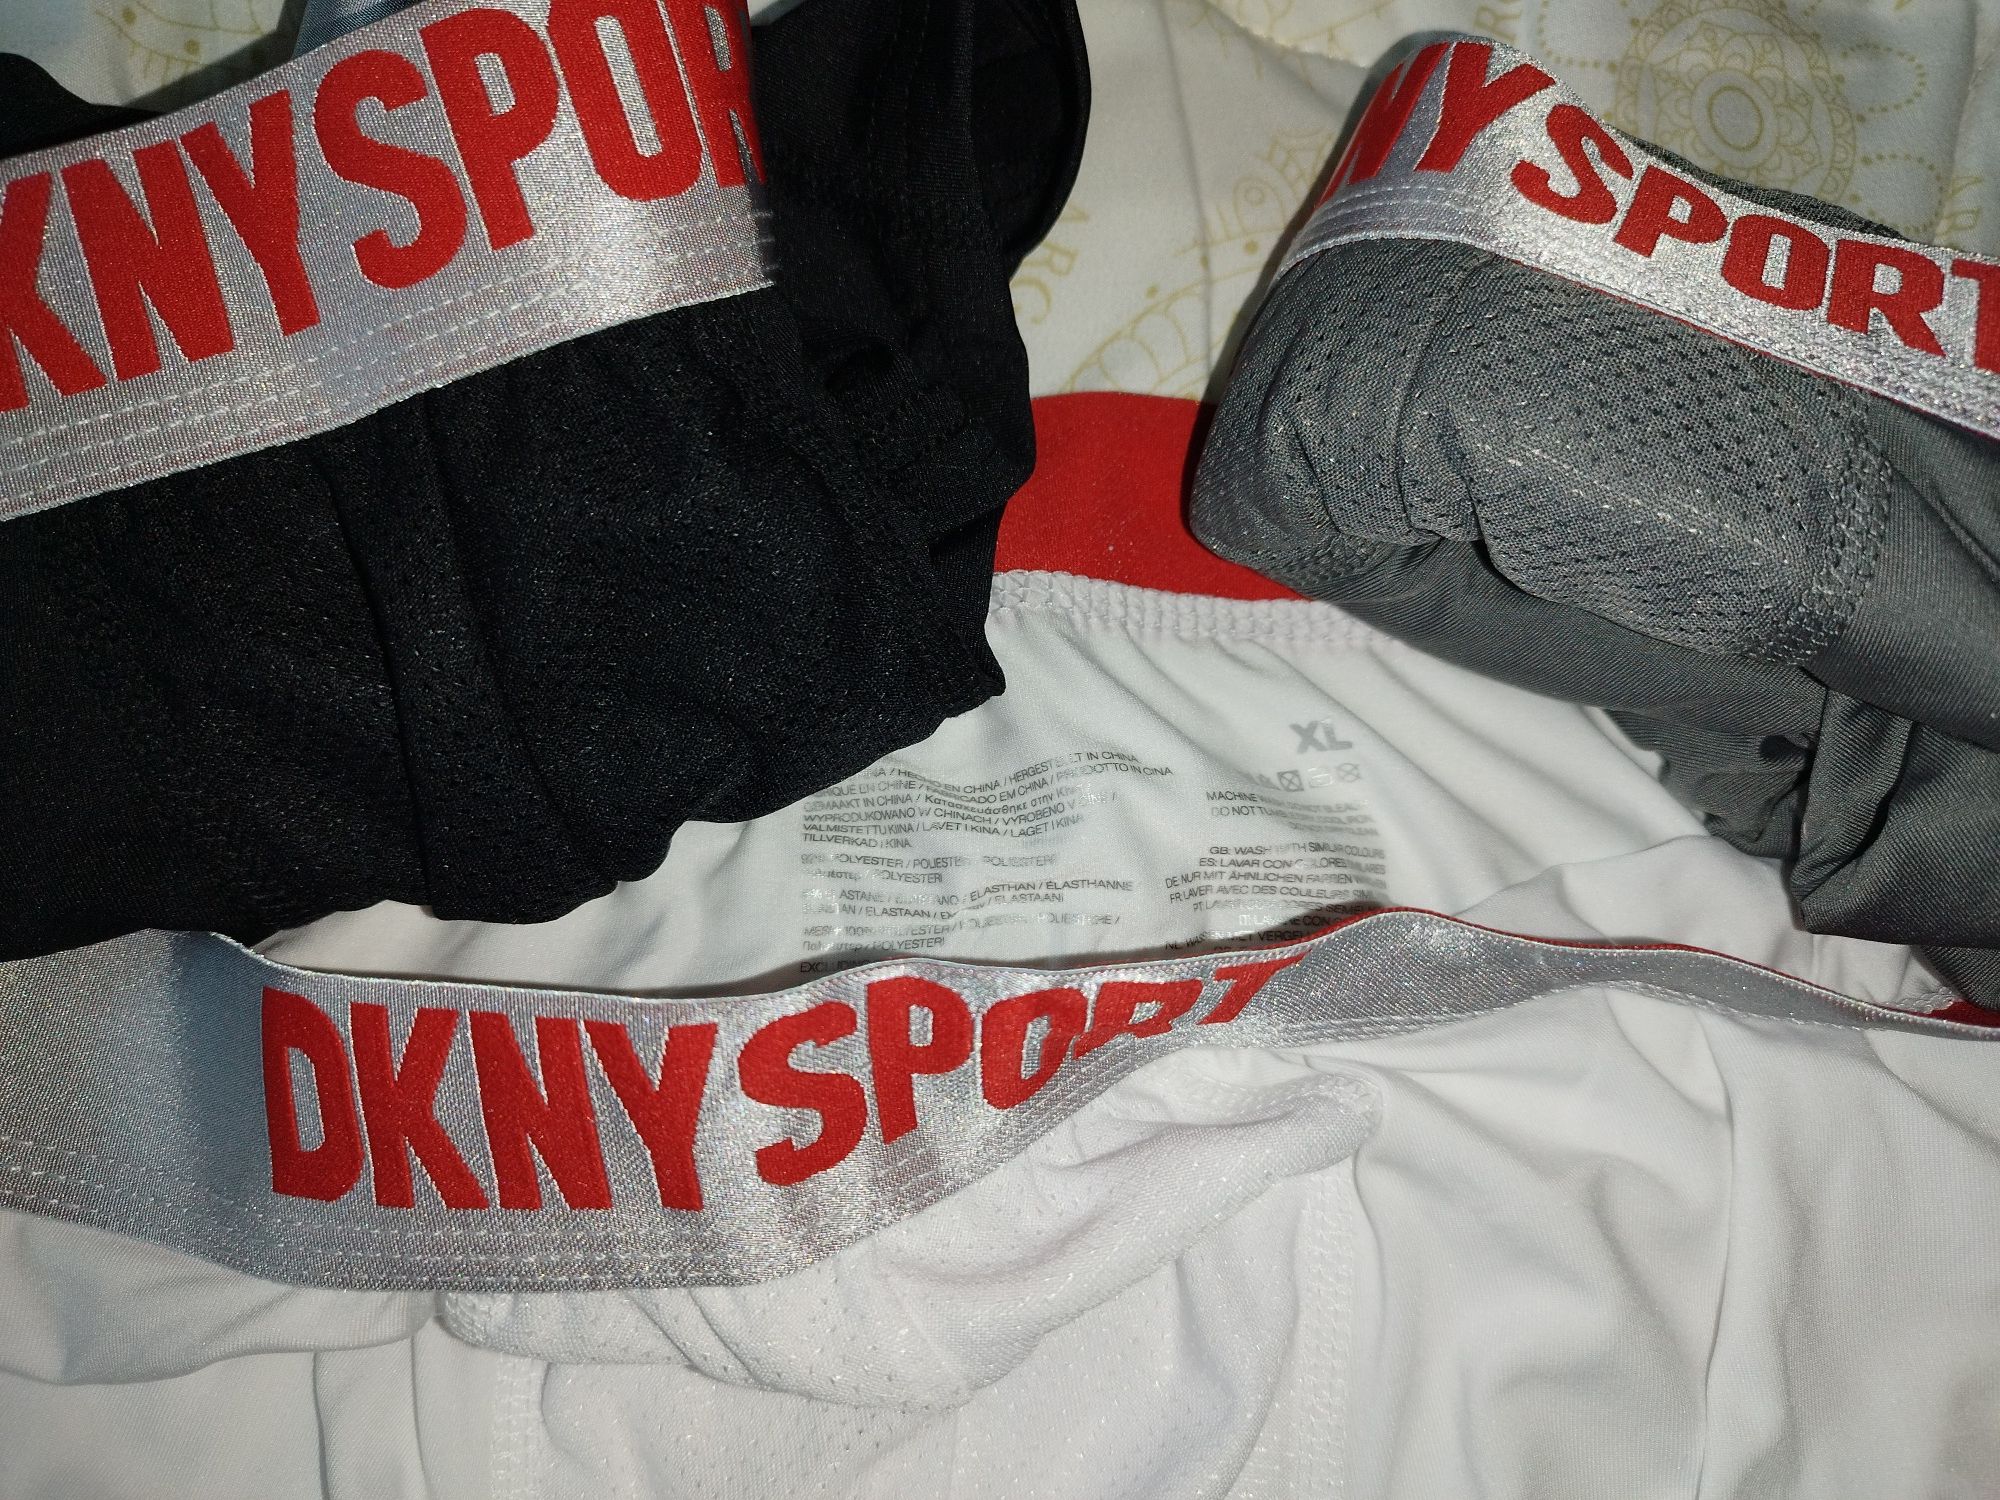 DKNY SPORT мъжки боксерки